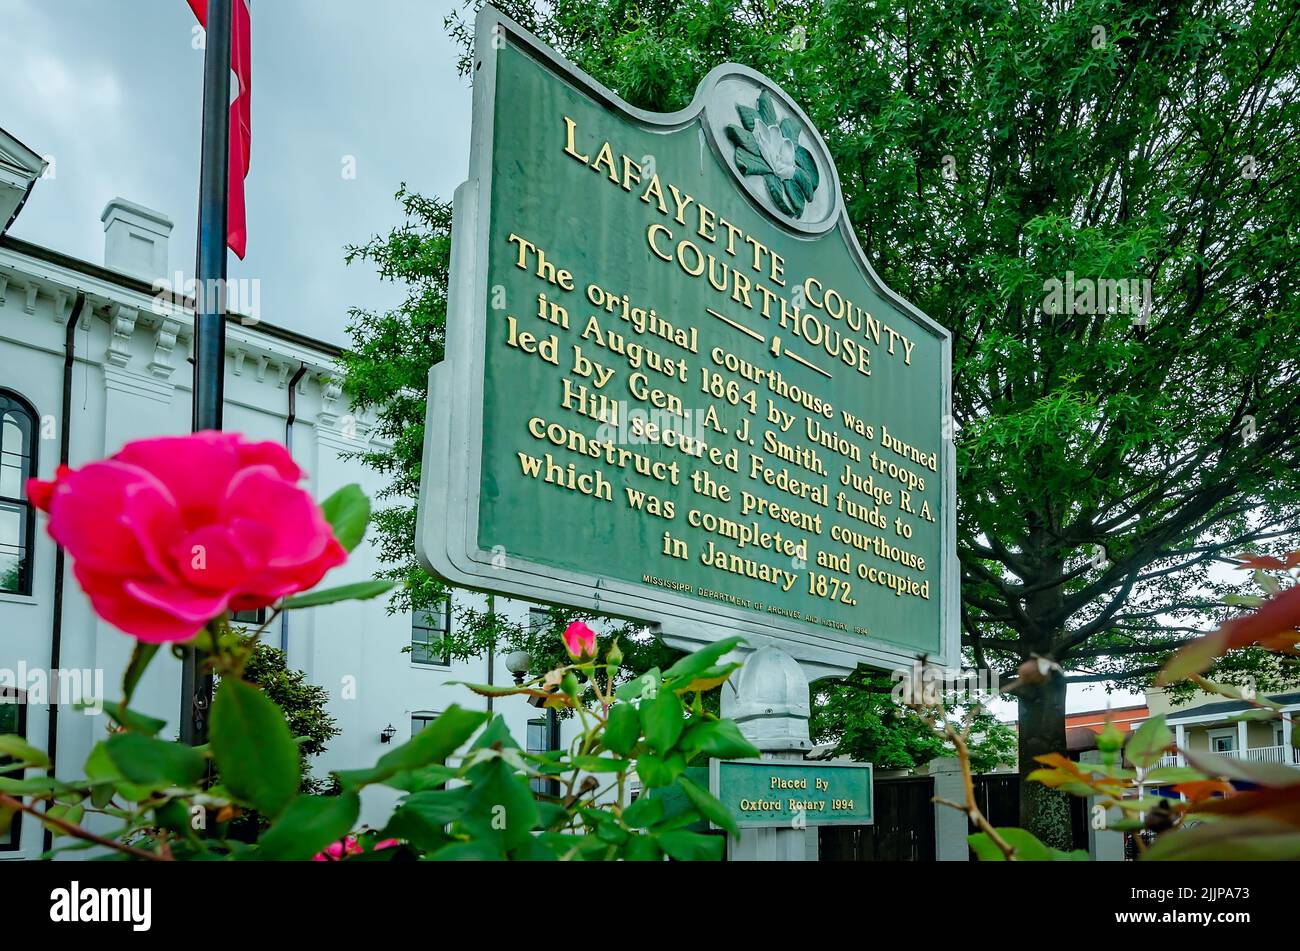 Un marcador histórico se encuentra frente al Palacio de Justicia del Condado de Lafayette en Courthouse Square, el 31 de mayo de 2015, en Oxford, Mississippi. Foto de stock